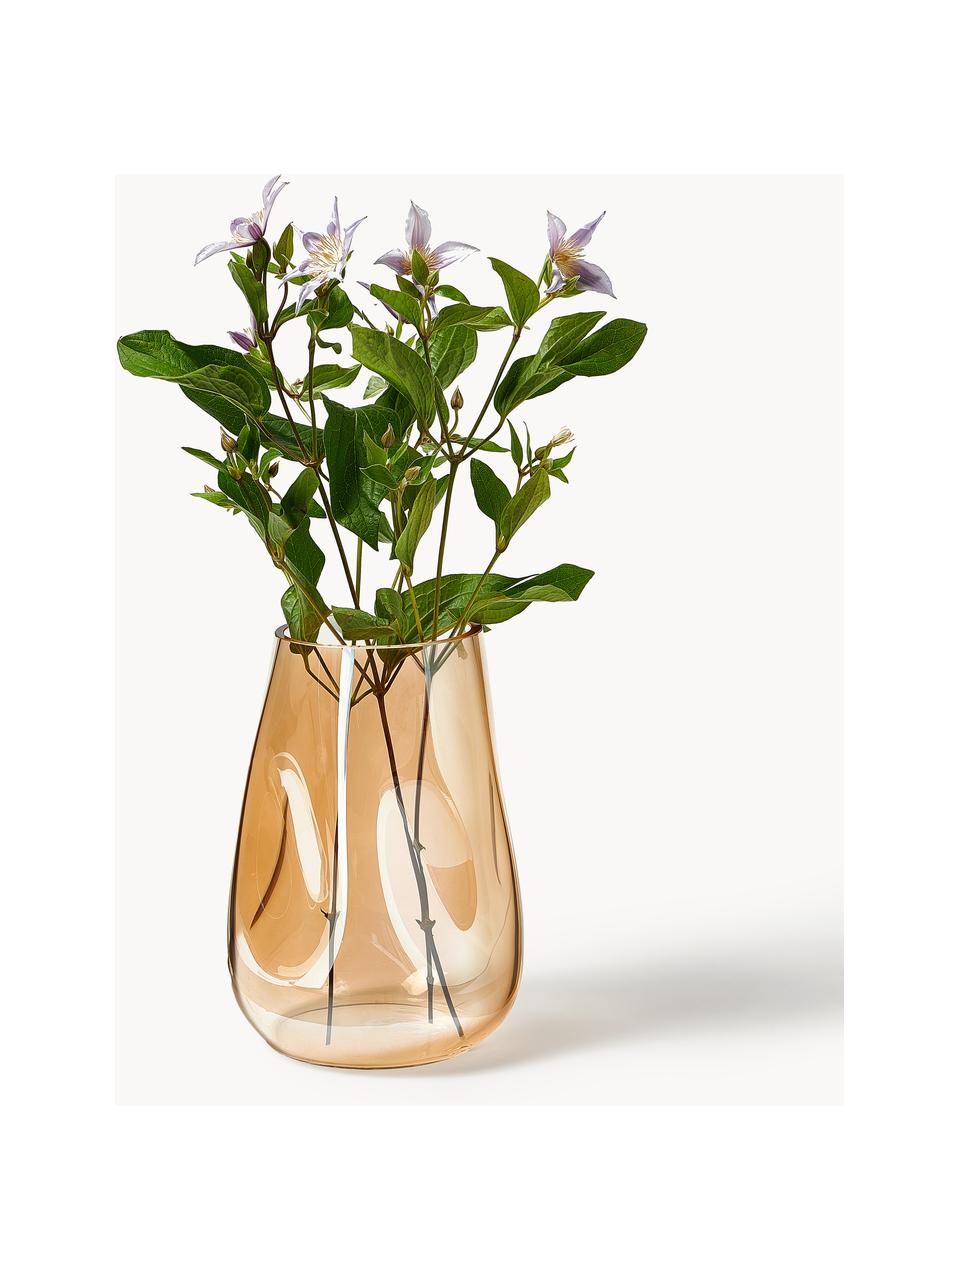 Ručně foukané skleněná váza Luster, V 26 cm, Ručně foukané sklo, Okrová, Ø 18 cm, V 26 cm